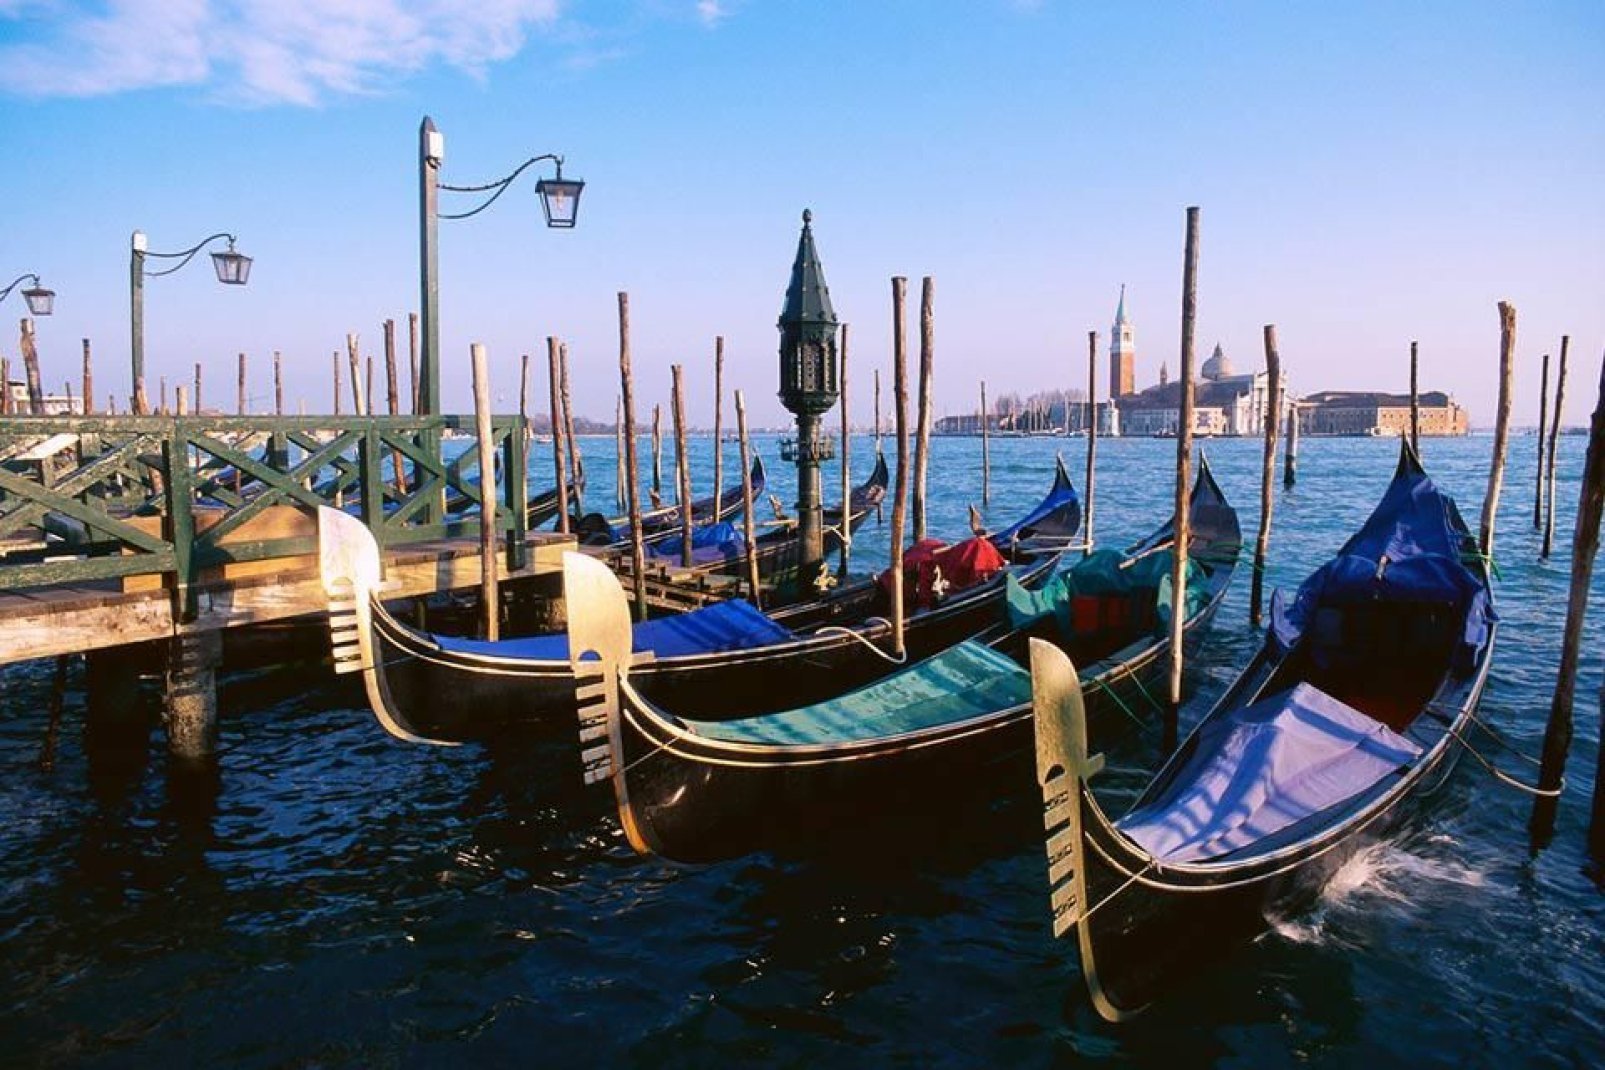 Diese einzigartigen Boote sind zum Symbol der venezianischen Hauptstadt geworden.